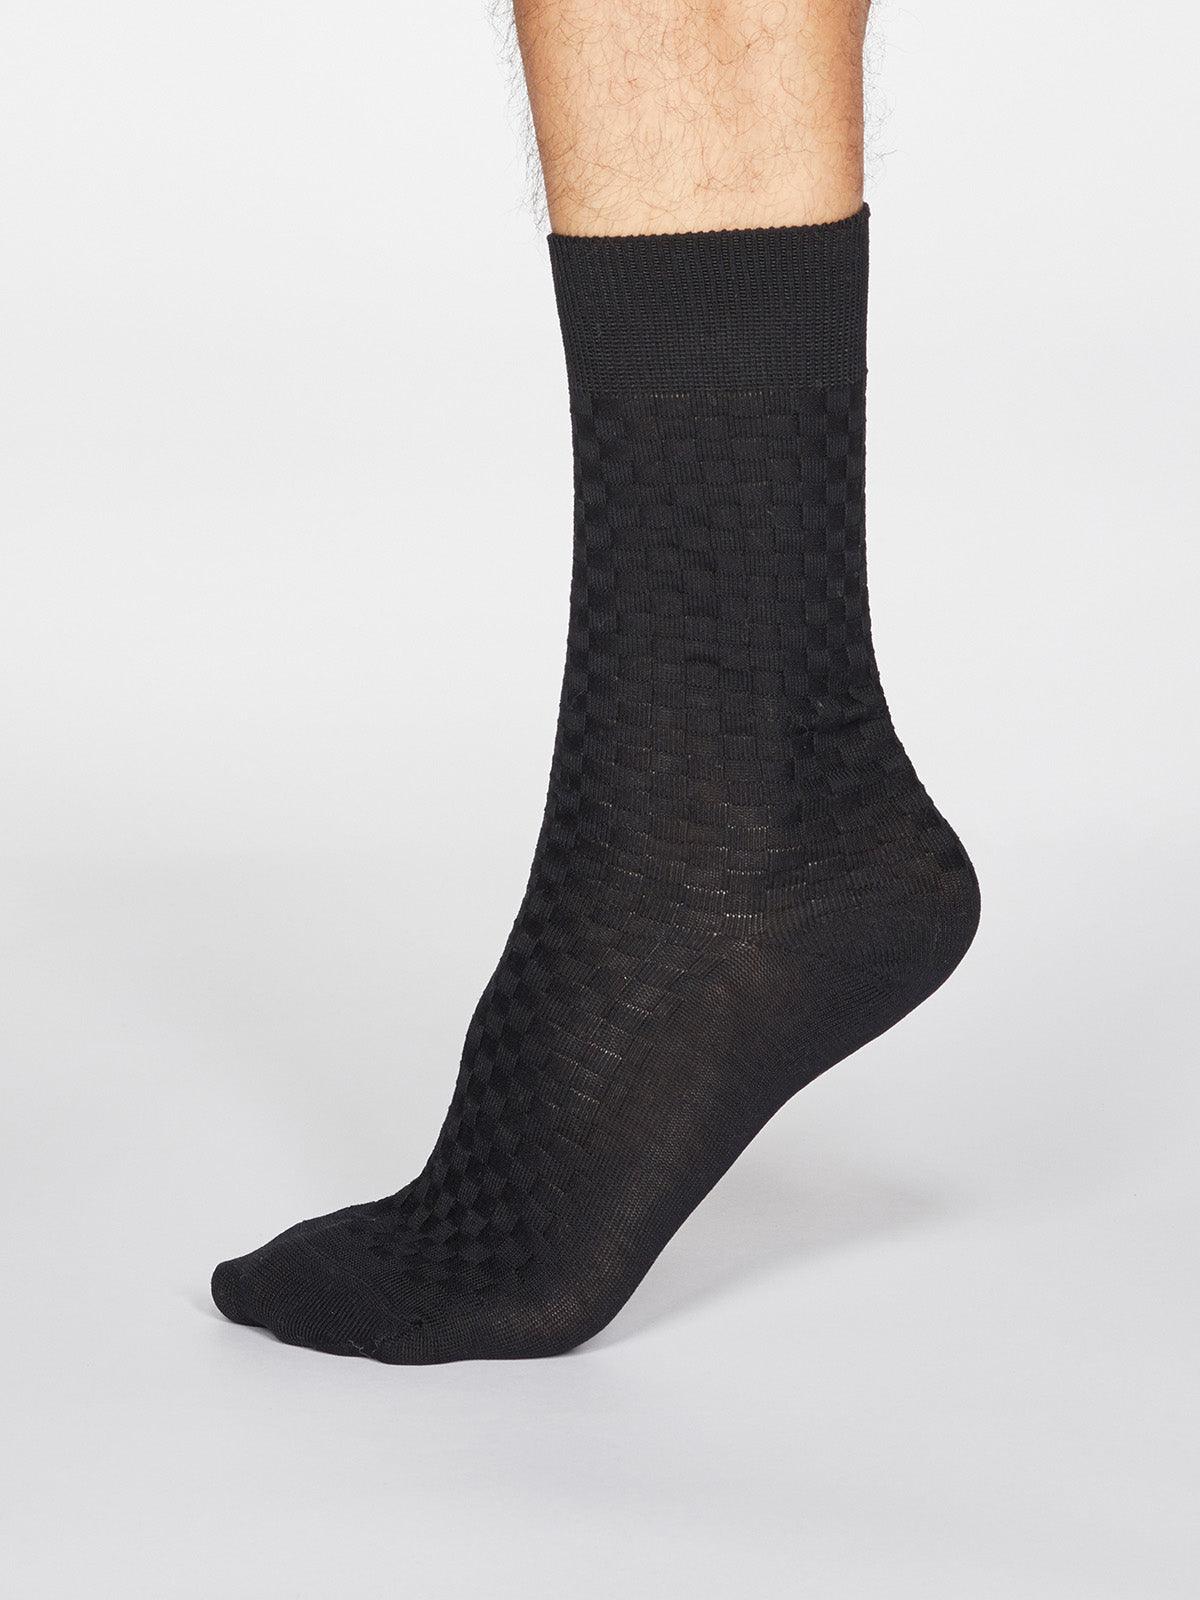 Cameron Dress Socks - Black - Thought Clothing UK